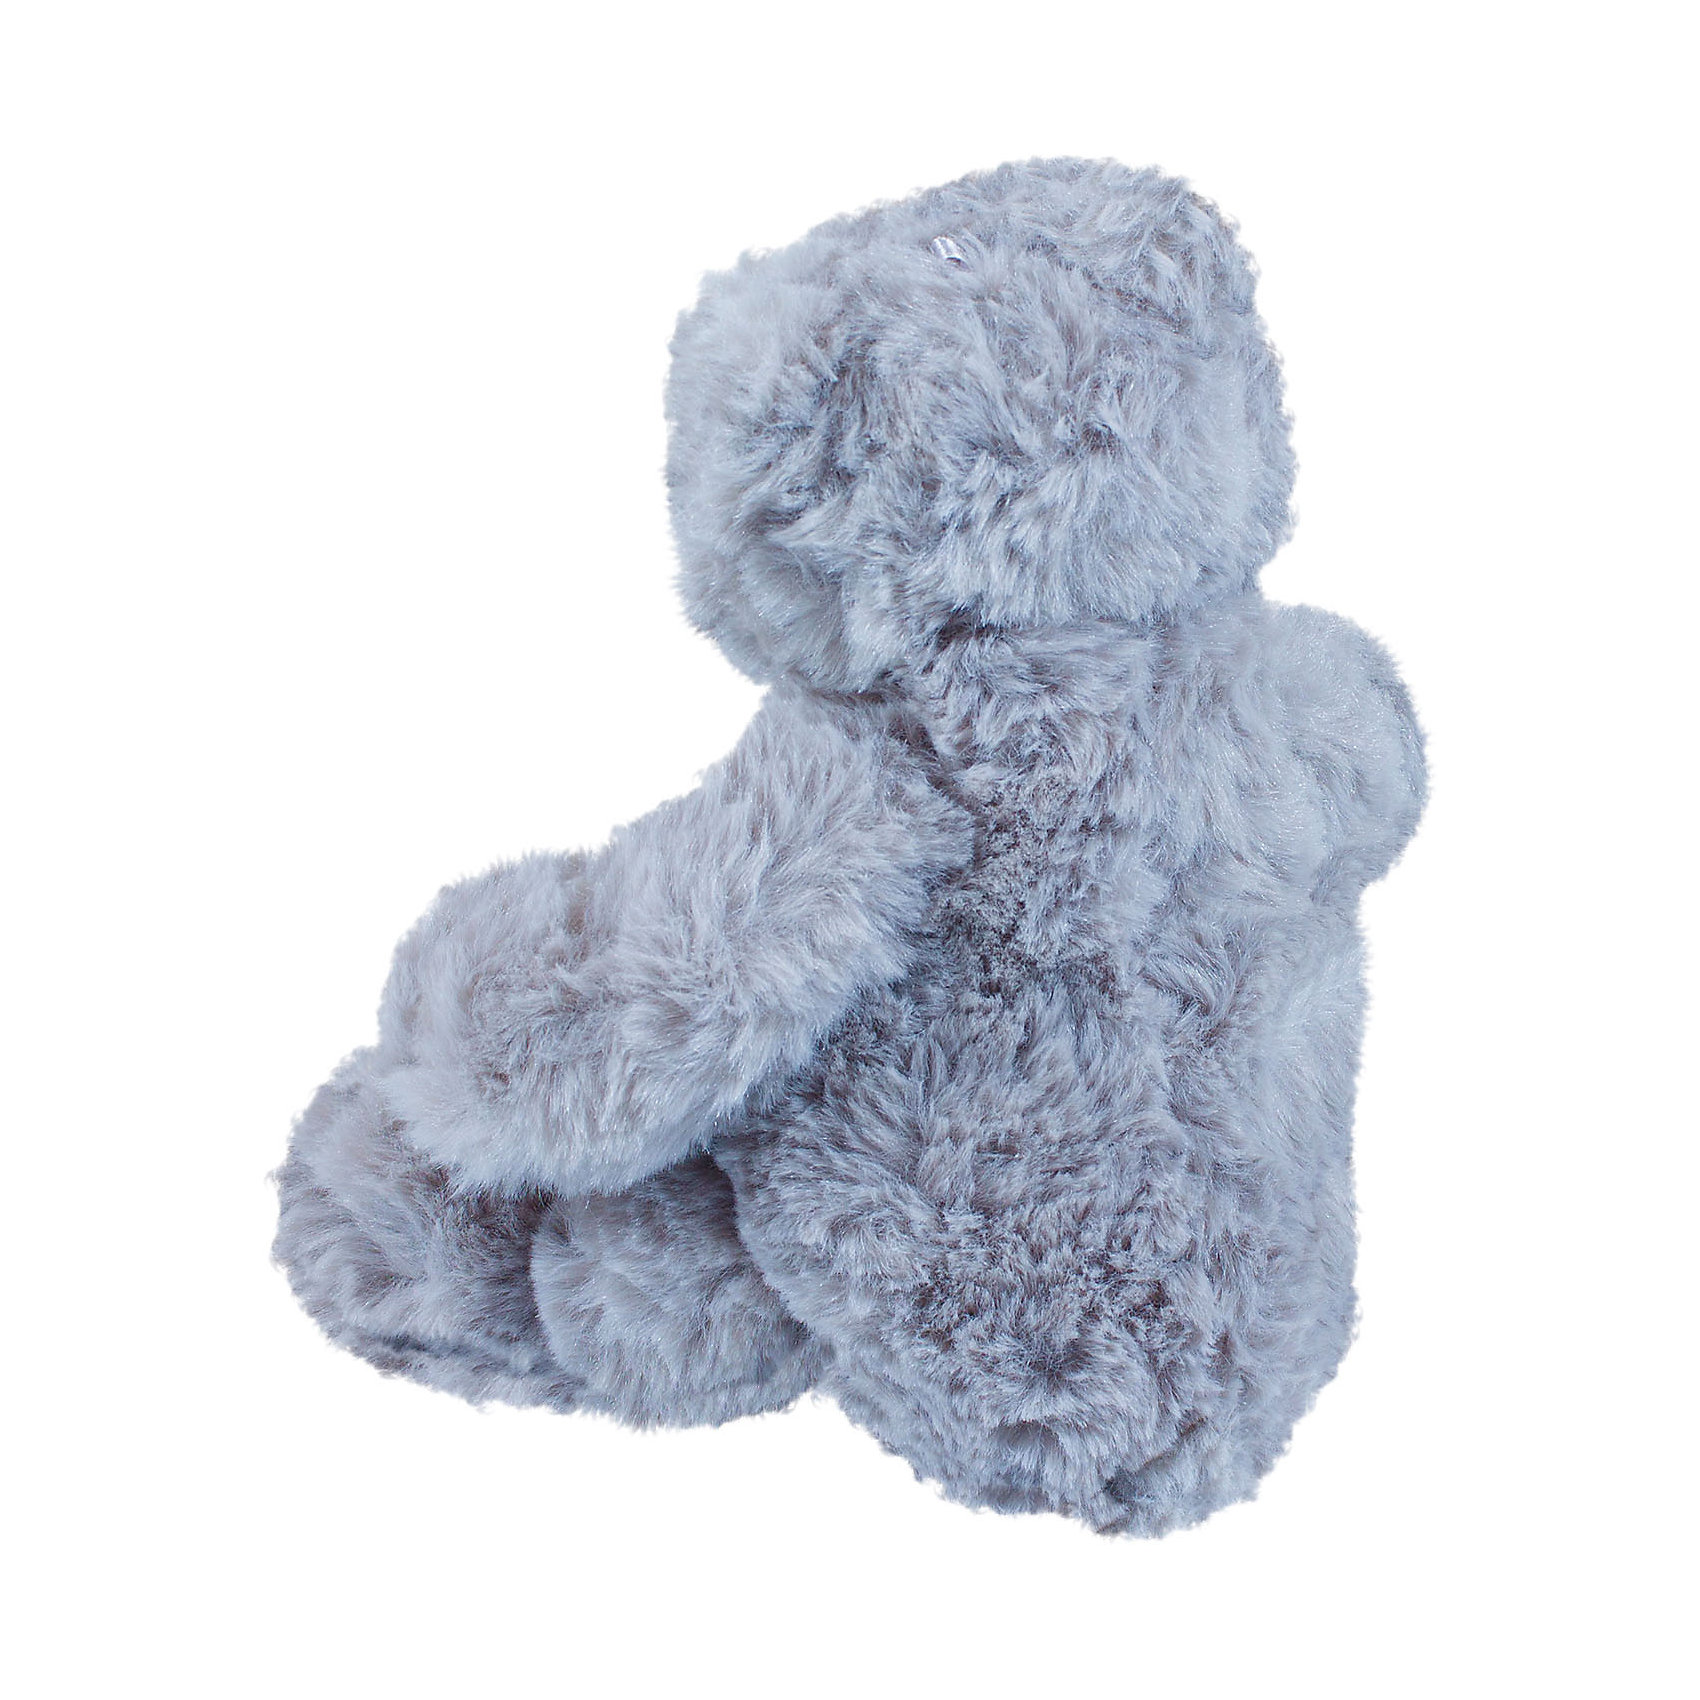 Мягкая игрушка Медвежонок Альфред, 22 см Teddykompaniet 15012899